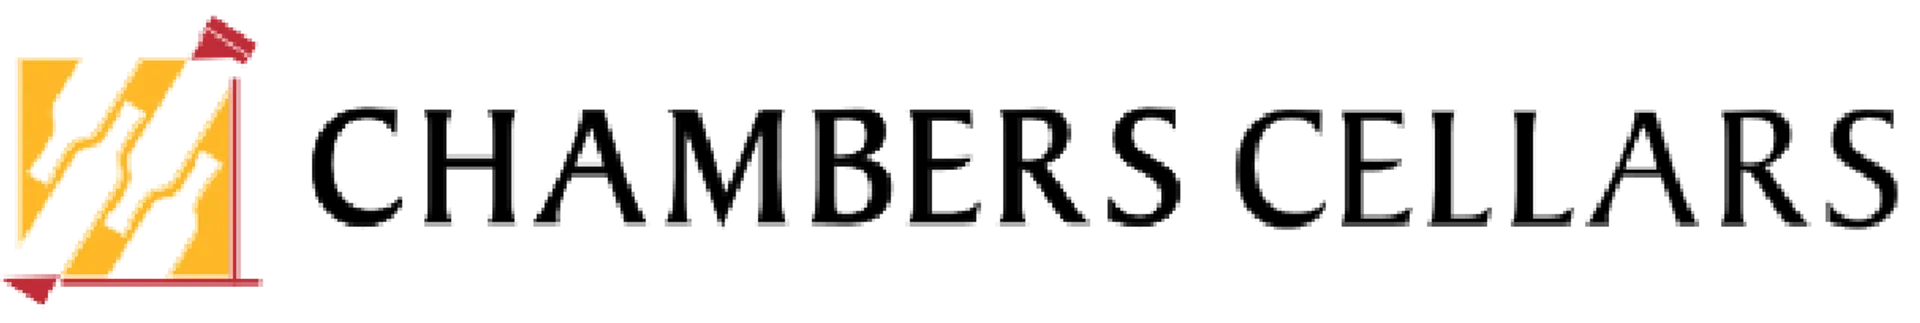 CHAMBER CELLARS logo